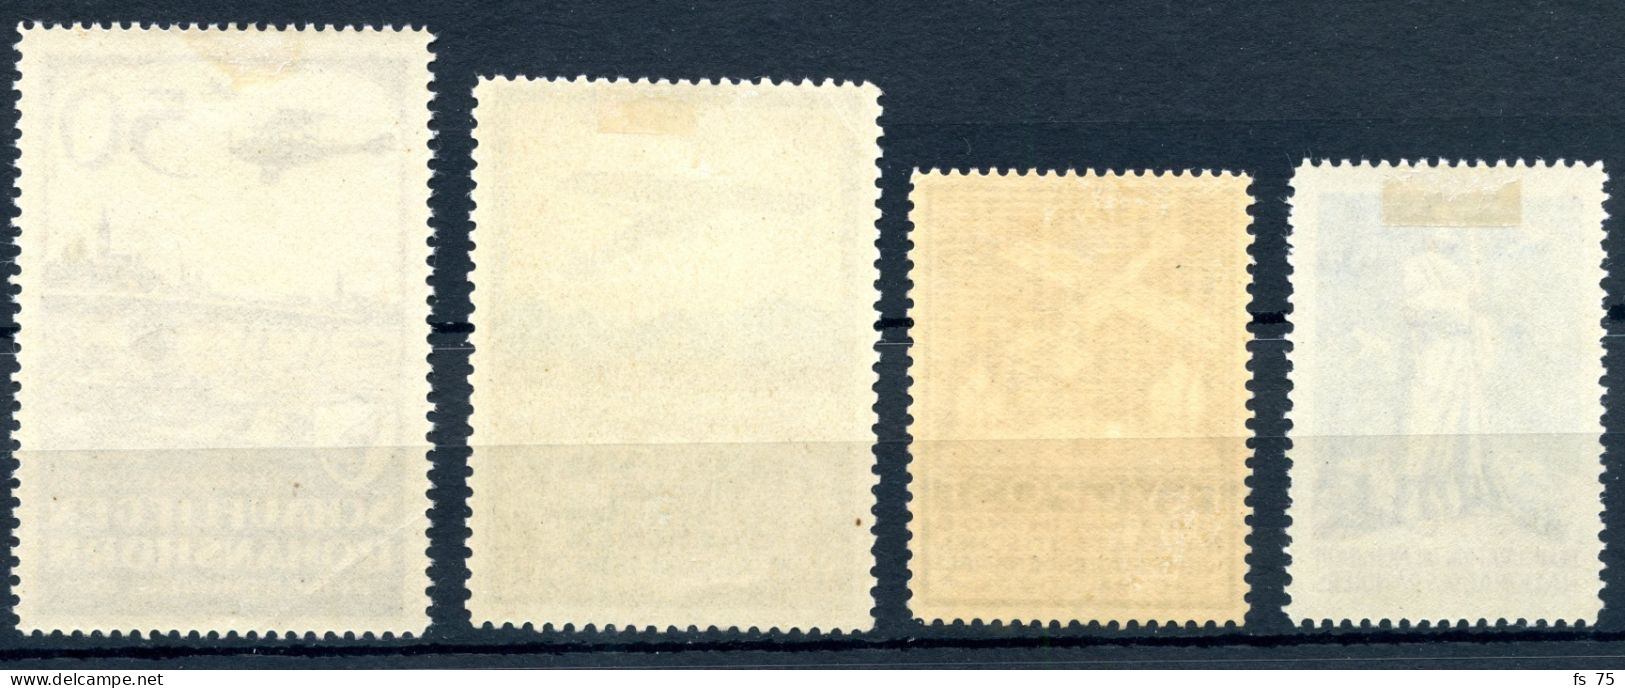 SUISSE - POSTE AERIENNE - LOT DE 4 TIMBRES SEMI-OFFICIELS * - Unused Stamps